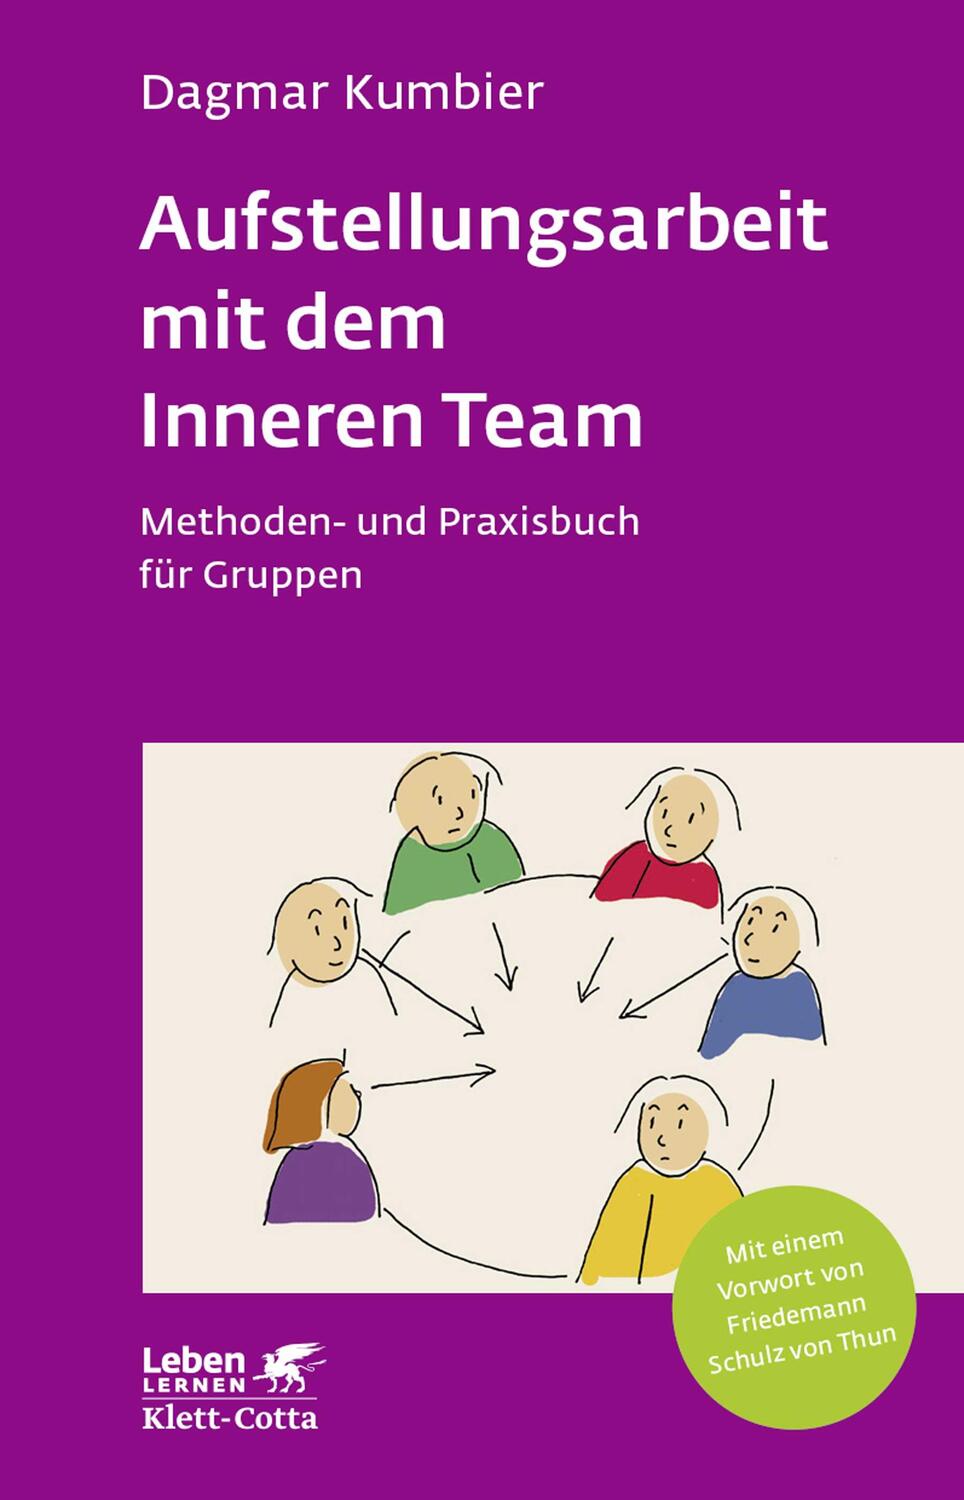 Aufstellungsarbeit mit dem Inneren Team (Leben lernen, Bd. 282) - Kumbier, Dagmar